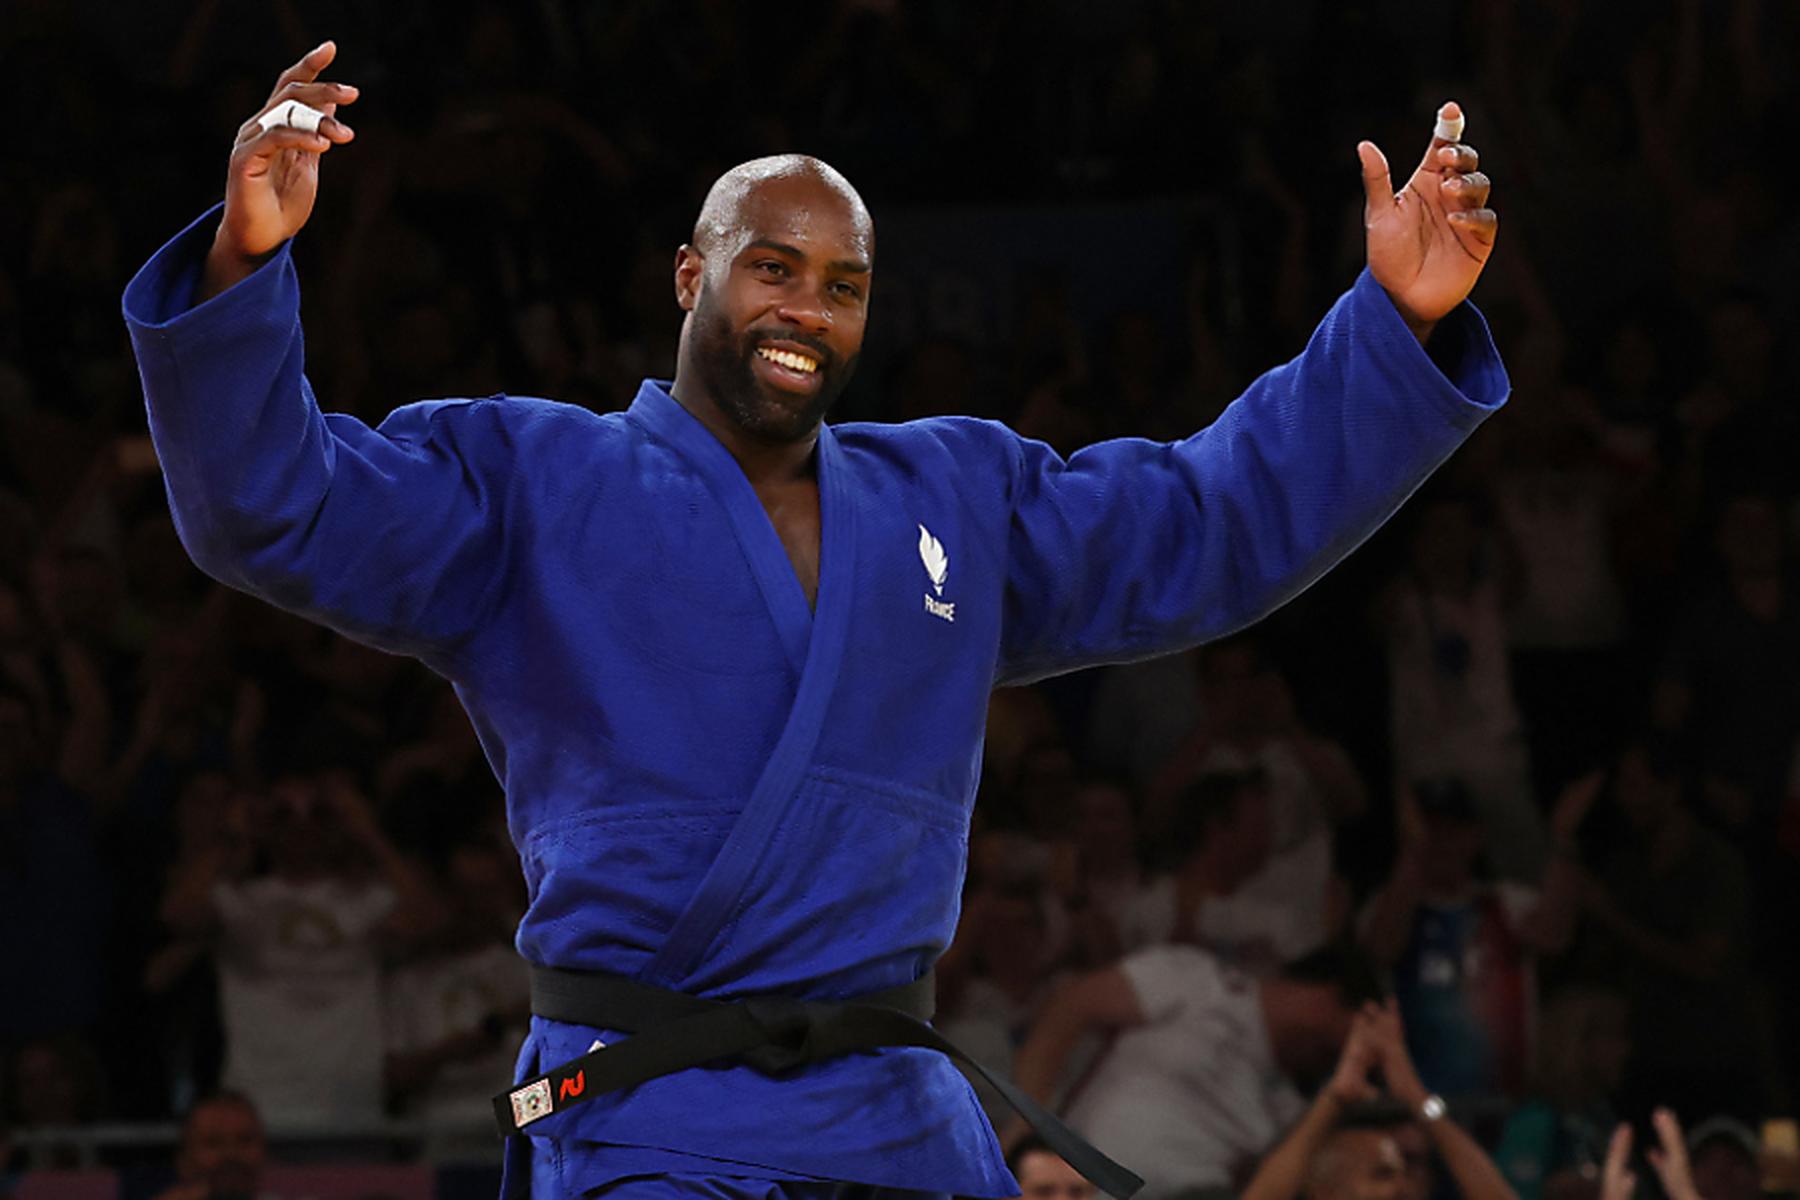 Paris: Französischer Judoka Teddy Riner holt Gold-Rekord